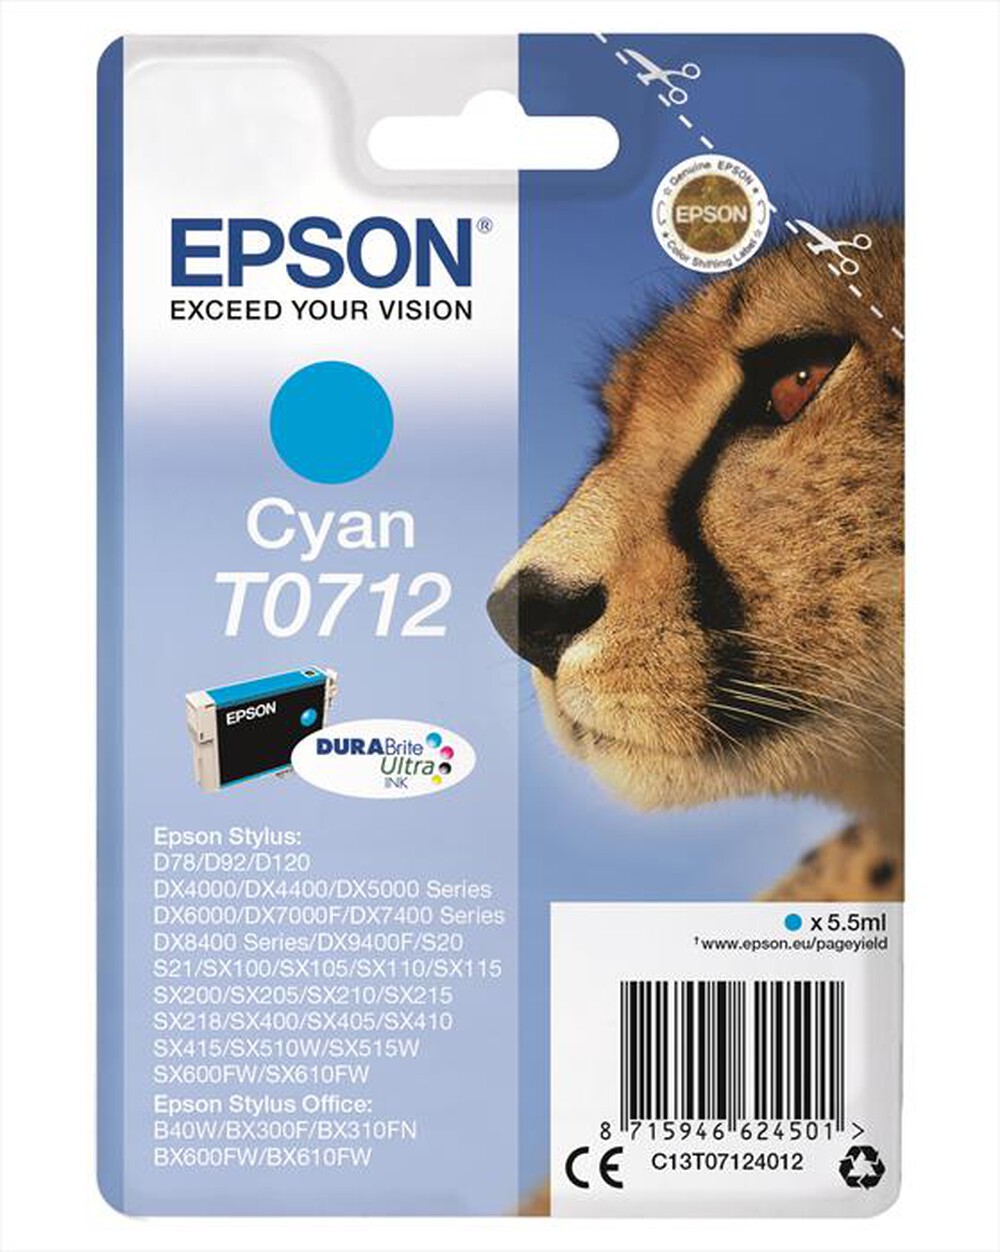 "EPSON - Cartuccia inchiostro ciano C13T07124021 - Ciano"